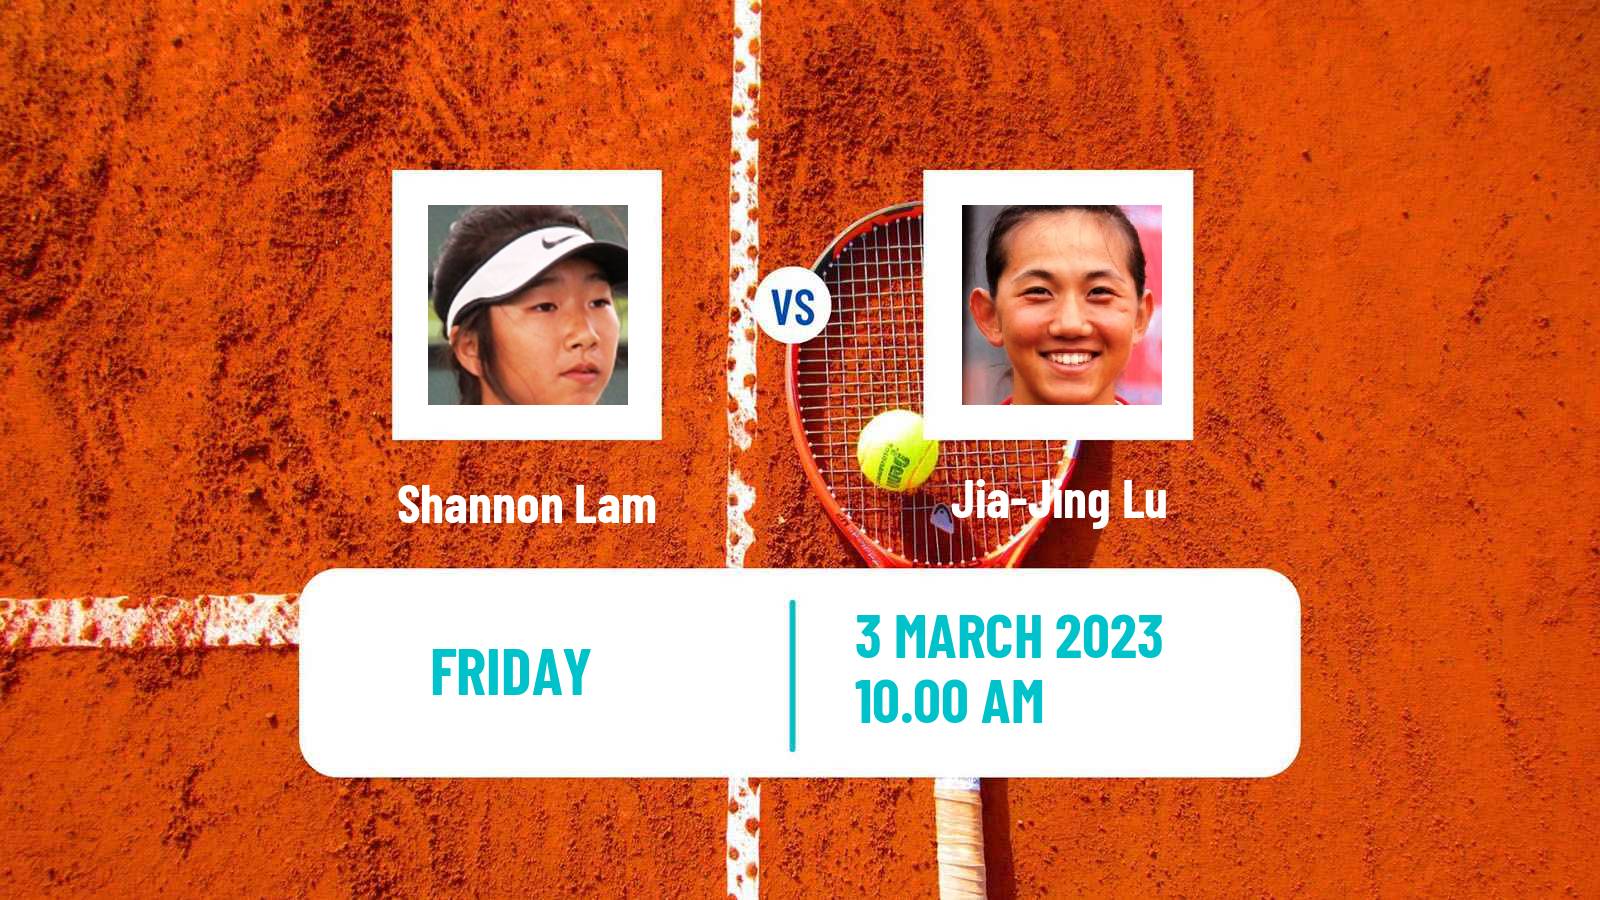 Tennis ITF Tournaments Shannon Lam - Jia-Jing Lu